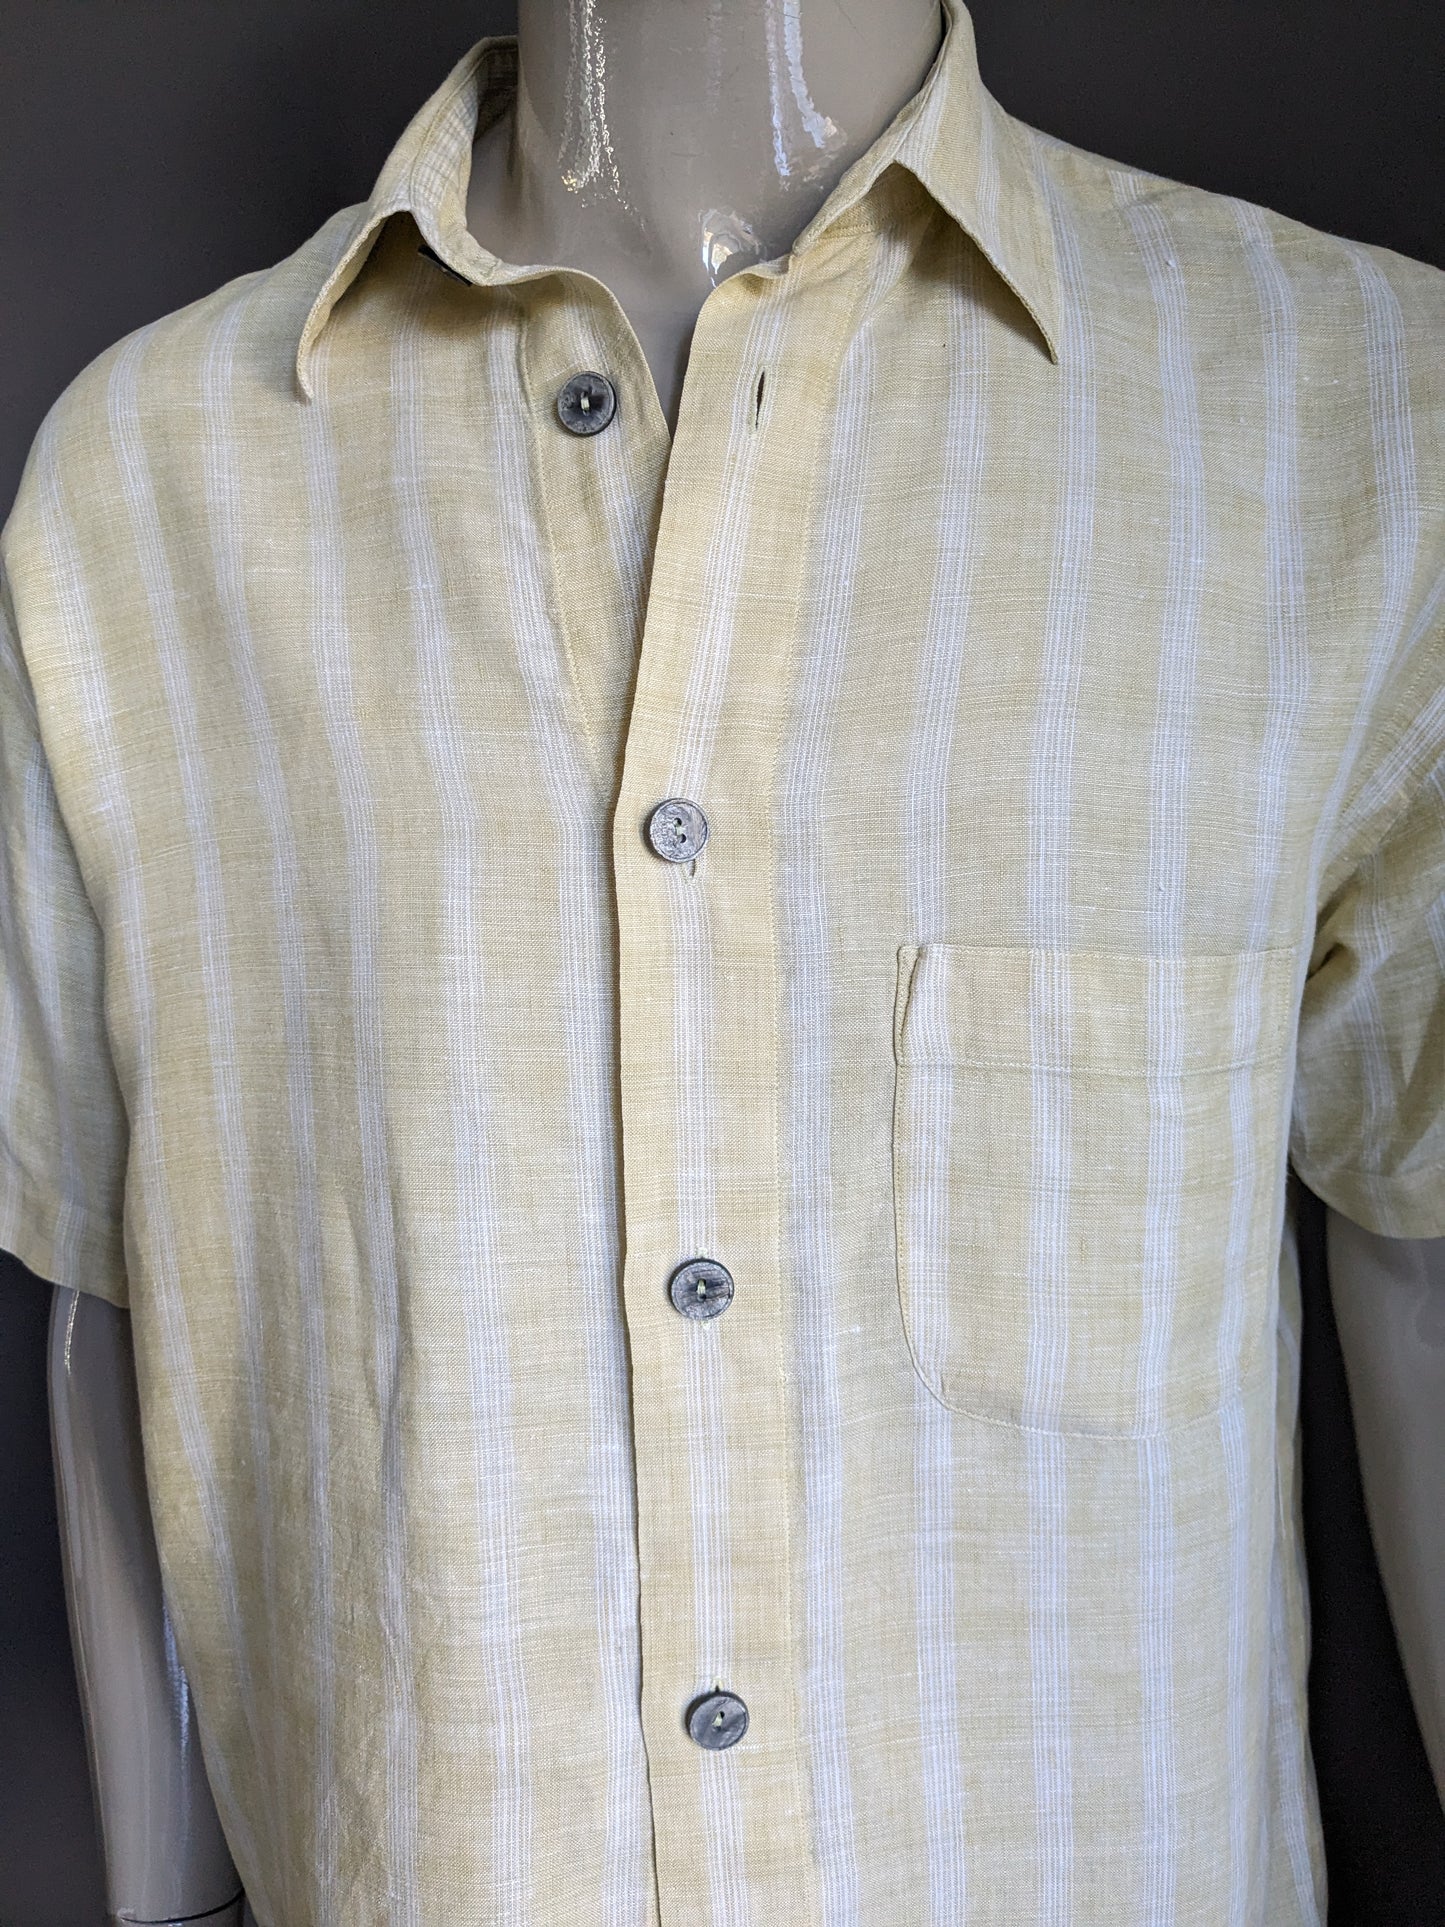 Camisa de lino vintage manga corta. Botones más grandes. Amarillo blanco a cuadros. Tamaño L / XL.